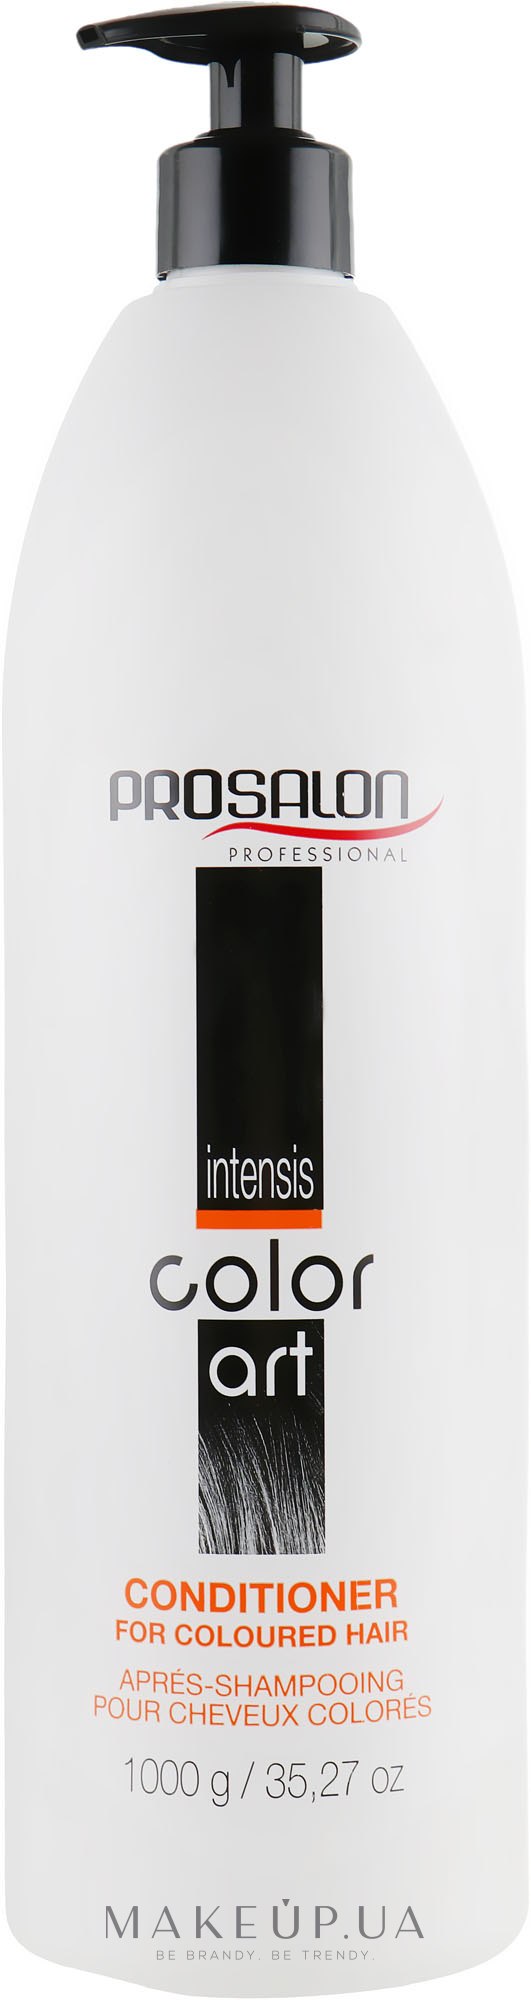 Кондиционер для волос после окраски - Prosalon Intensis Color Art Conditioner for Colored Hair — фото 1000g